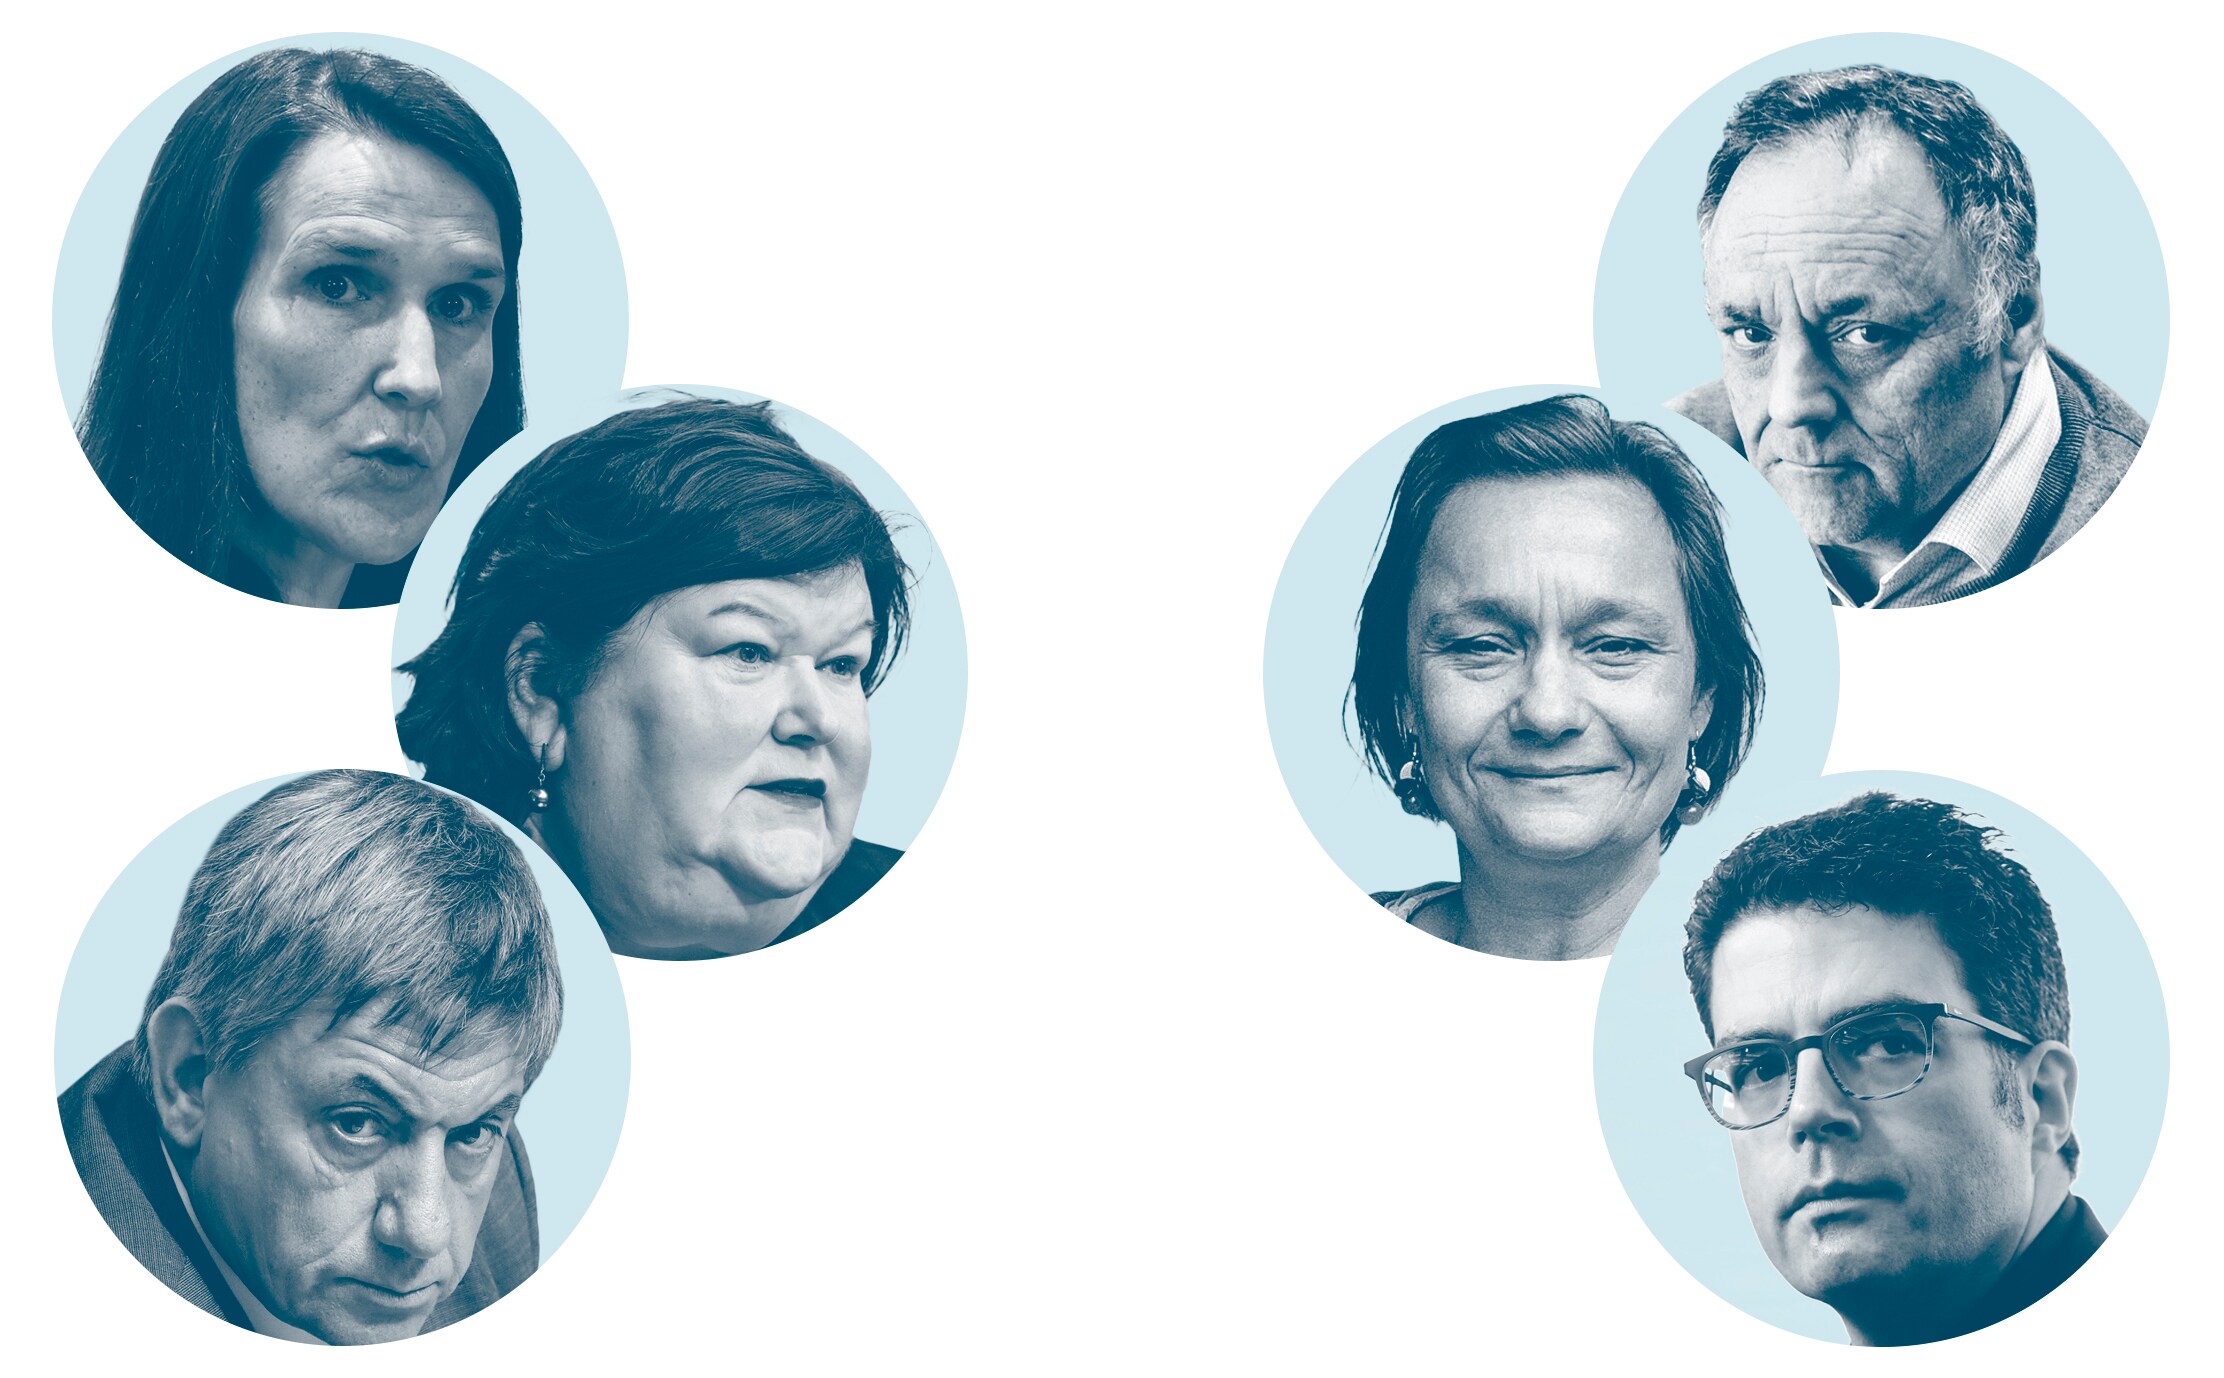 Links de politici (Sophie Wilmès, Maggie De Block, Jan Jambon), rechts de experts (Marc Van Ranst, Erika Vlieghe, Steven Van Gucht).